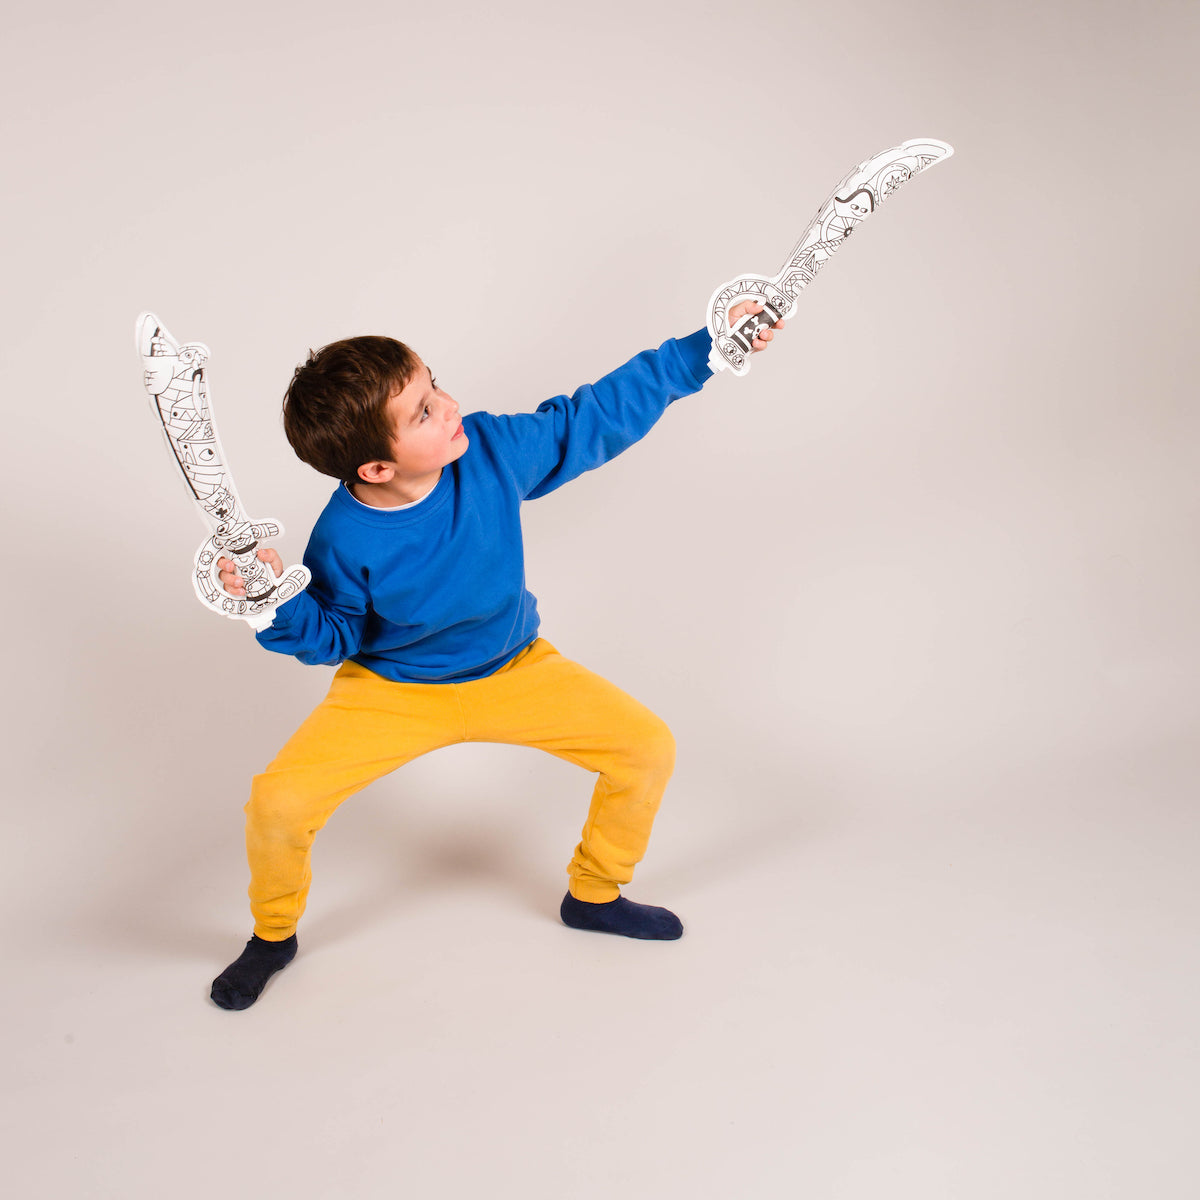 De OMY air toy opblaasbare kleurplaat pirates zorgt voor urenlang speelplezier voor je kindje. Deze leuke kleurplaat kun je inkleuren, opblazen en er vervolgens lekker mee spelen of gebruiken als decoratie. VanZus